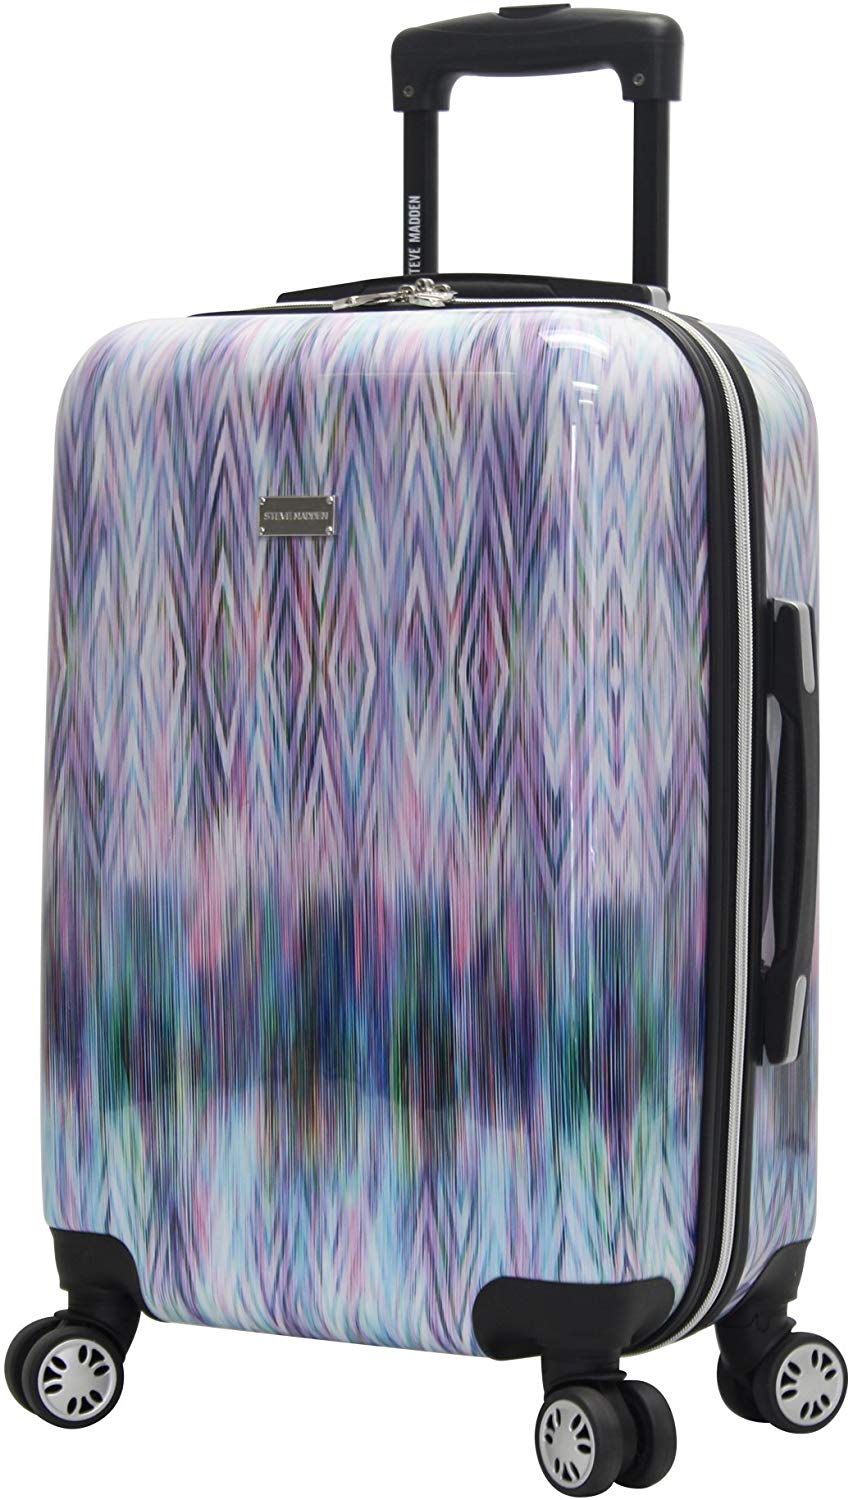 Steve Madden Travel Spinner Suitcase, 20-Inch